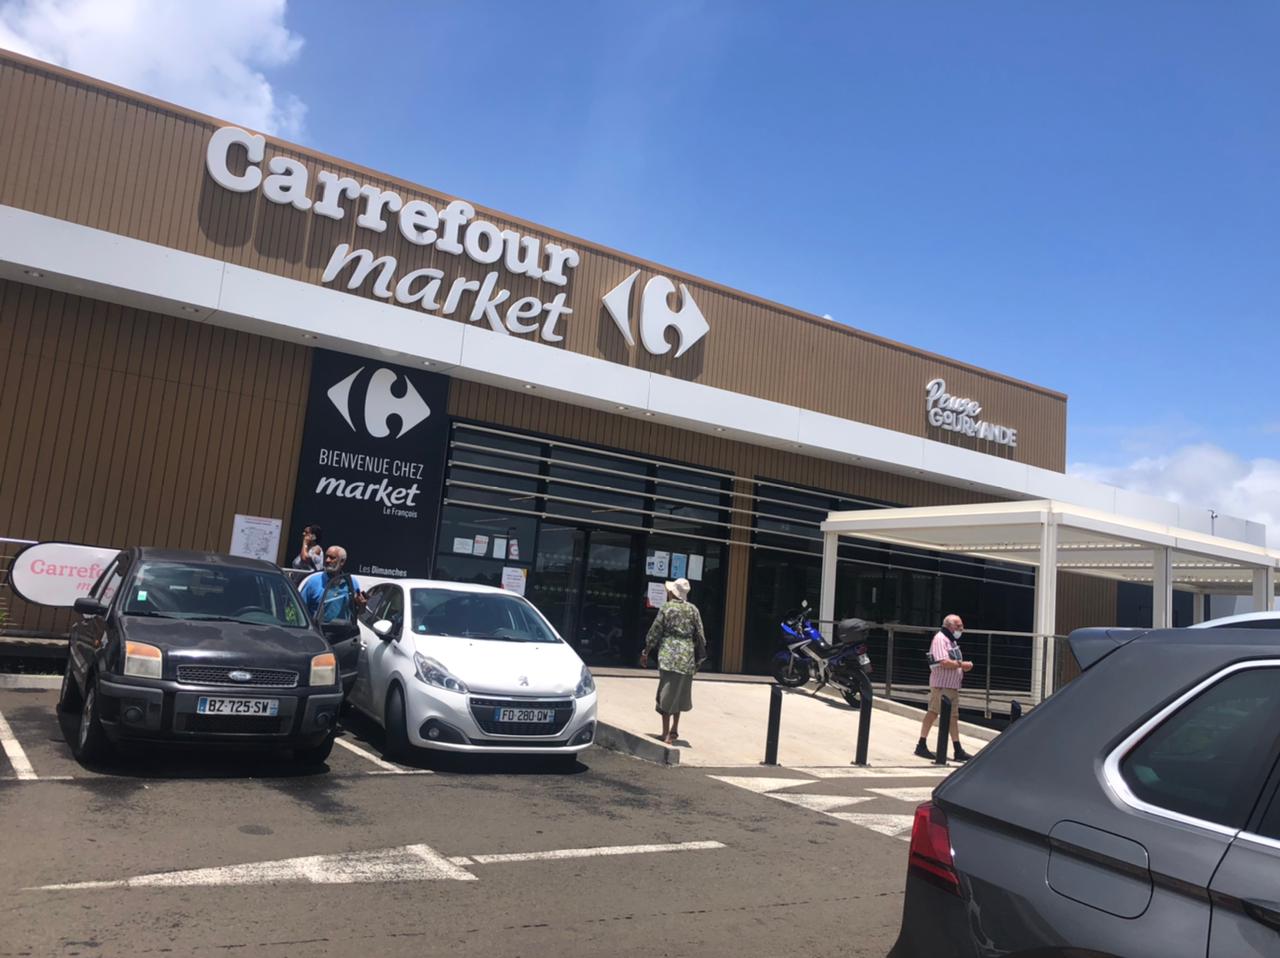     Reprise du travail au Carrefour Market du François

